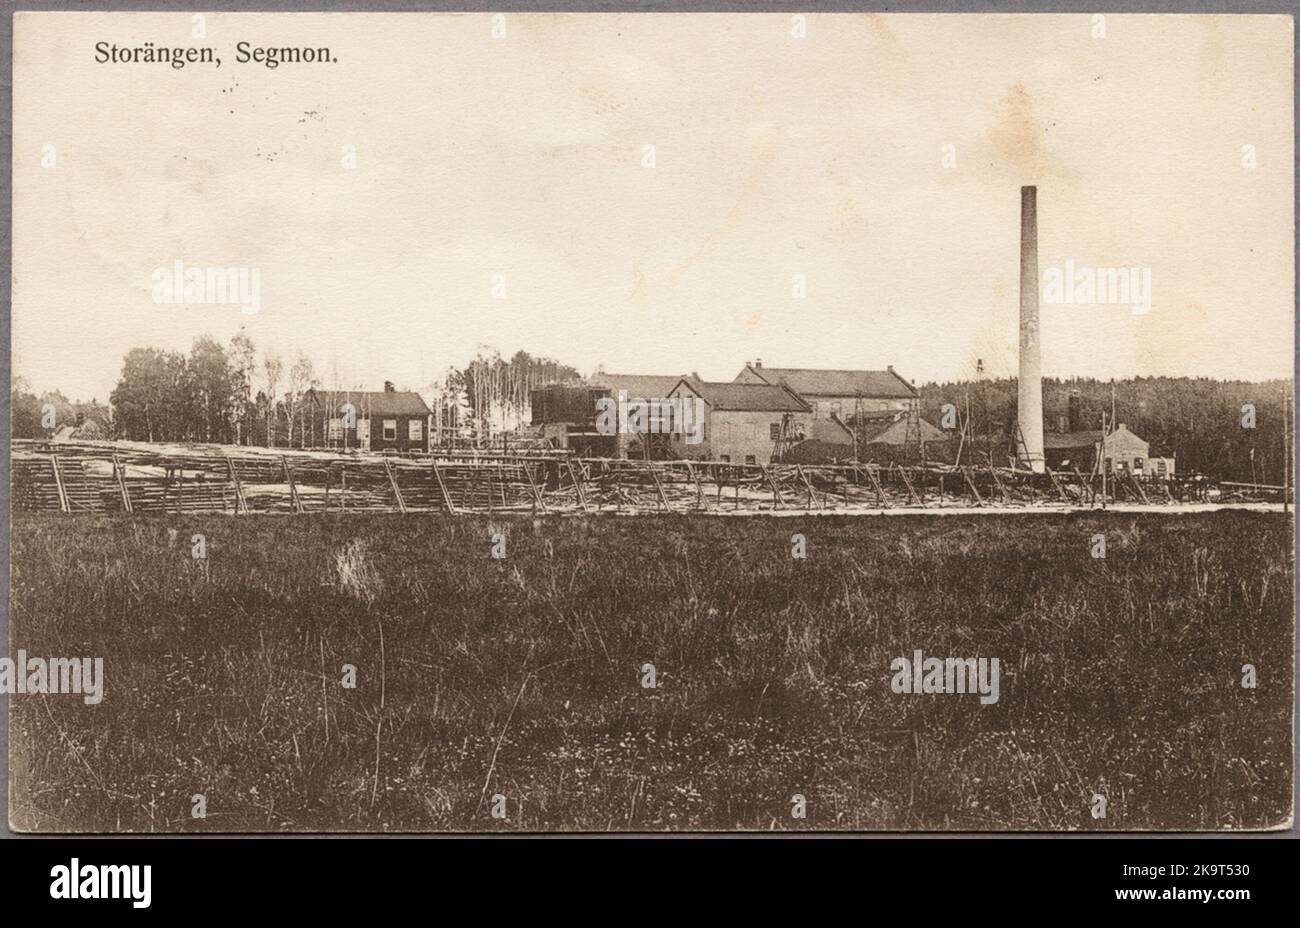 Segmon, Kyrkebyns Sulfit AB at Storängen. Stock Photo